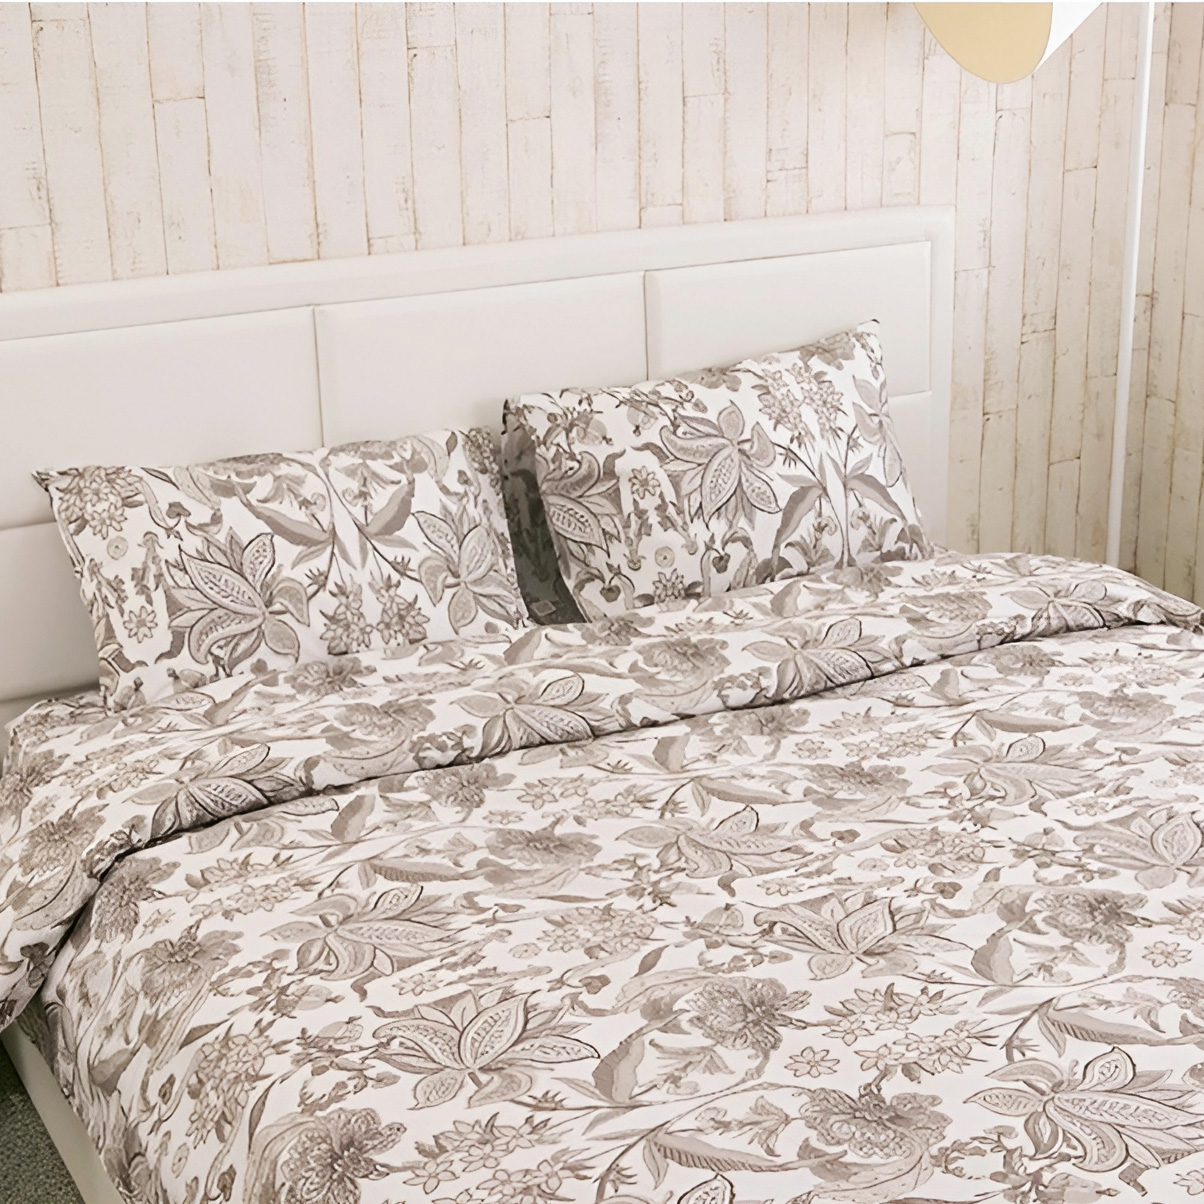 Комплект постельного белья Руно Luxury бязь набивная двуспальный бежевый (655.114_Luxury) - фото 1